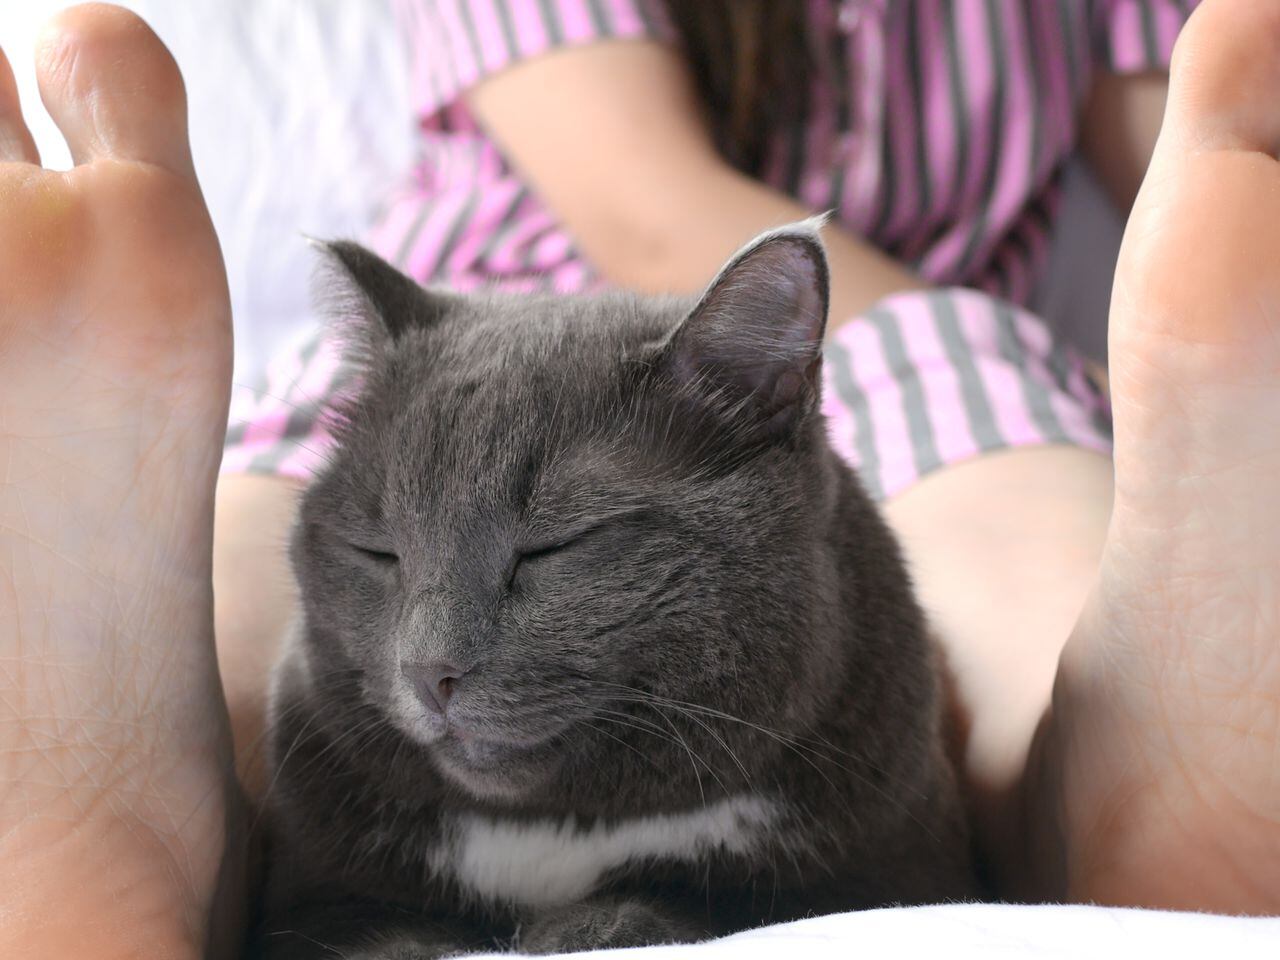 Por qué a los gatos les gusta dormir en los pies? - ¡Descúbrelo!